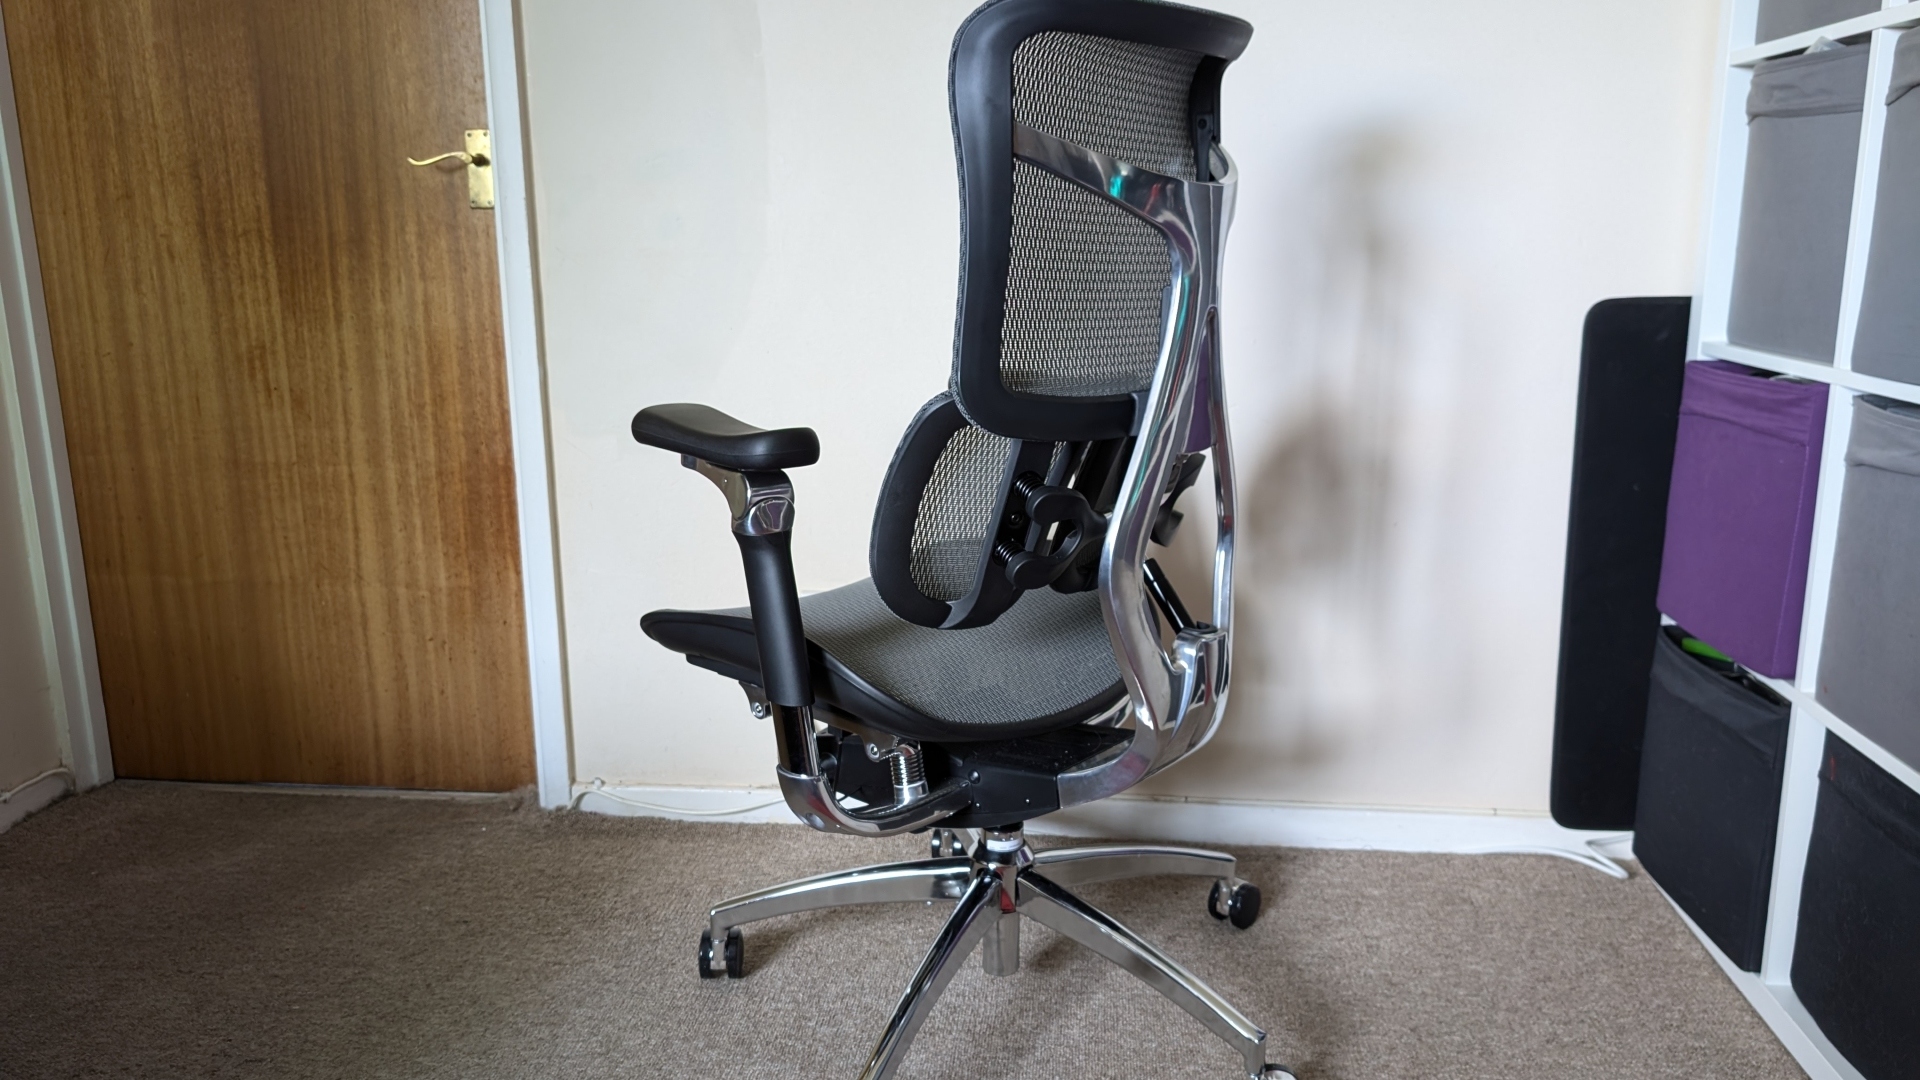 Sihoo S300 ergonomik ofis koltuğu inceleme görseli, sandalyenin arka tarafını göstermektedir.